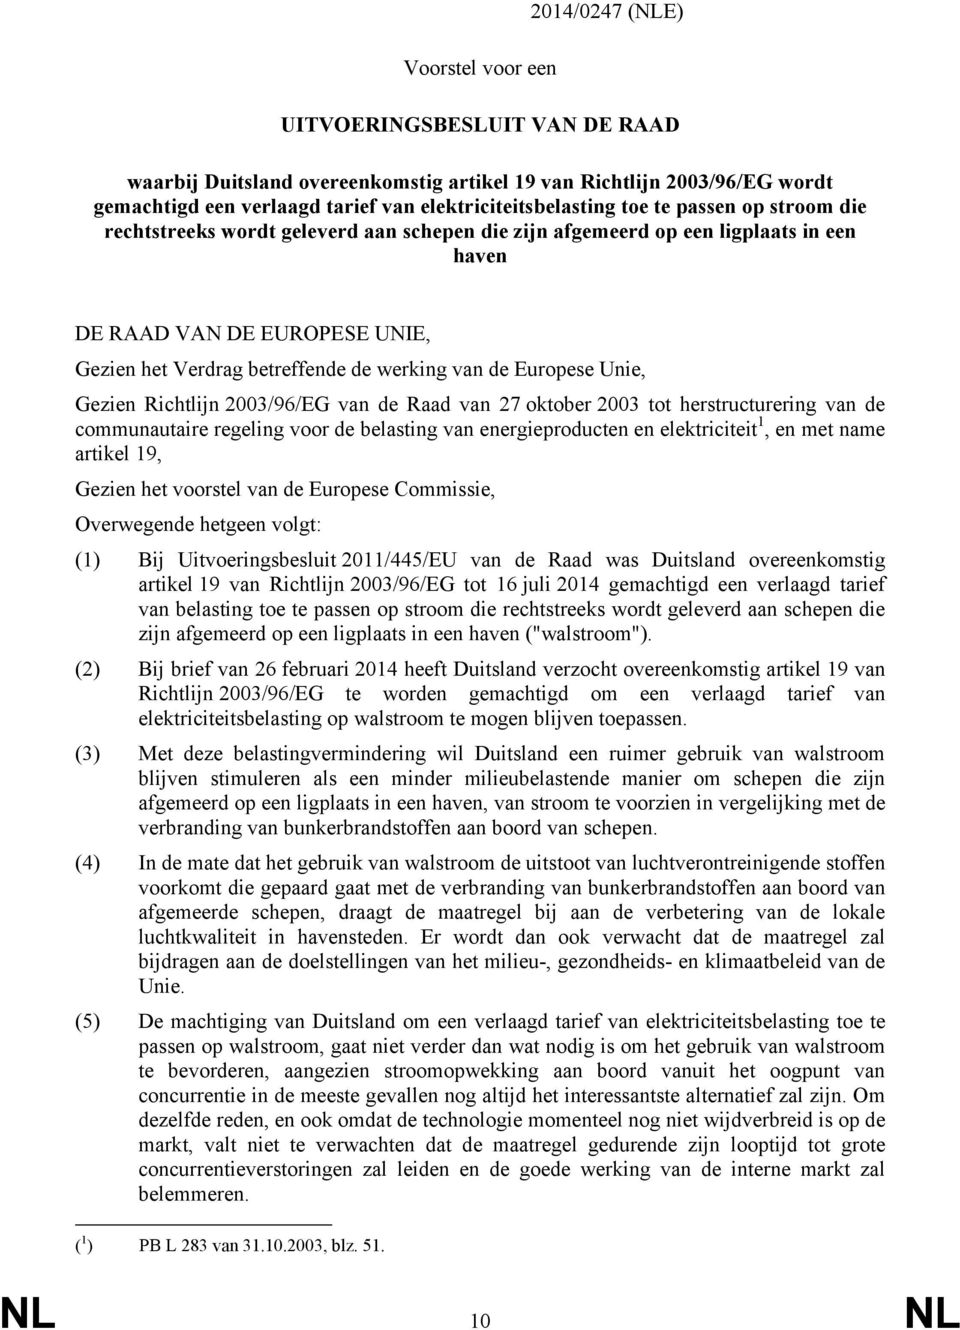 Europese Unie, Gezien Richtlijn 2003/96/EG van de Raad van 27 oktober 2003 tot herstructurering van de communautaire regeling voor de belasting van energieproducten en elektriciteit 1, en met name